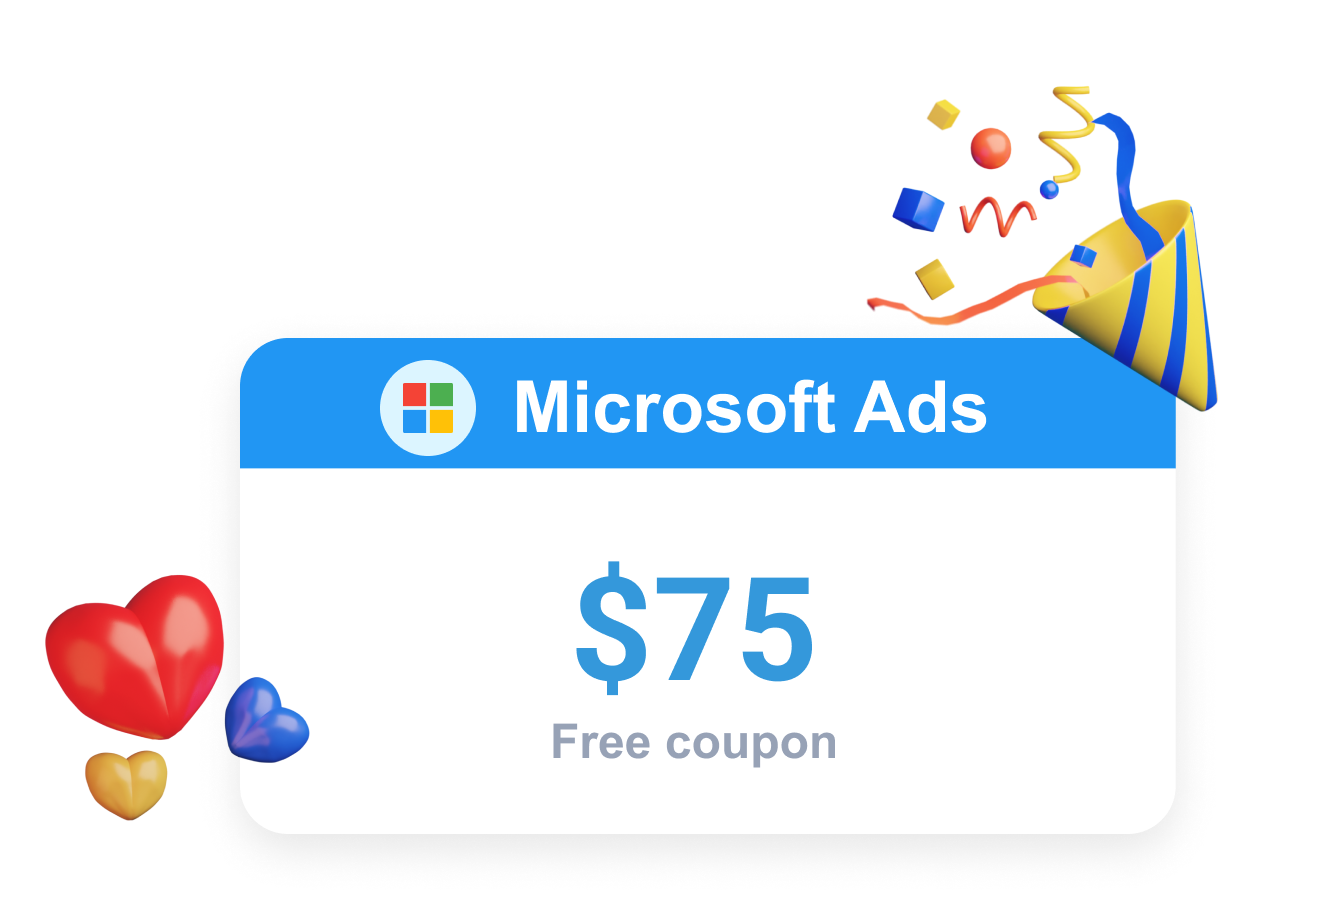 Clever Ads bietet eine Microsoft Ads Promo in Form eines kostenlosen Bing Ads Gutscheins